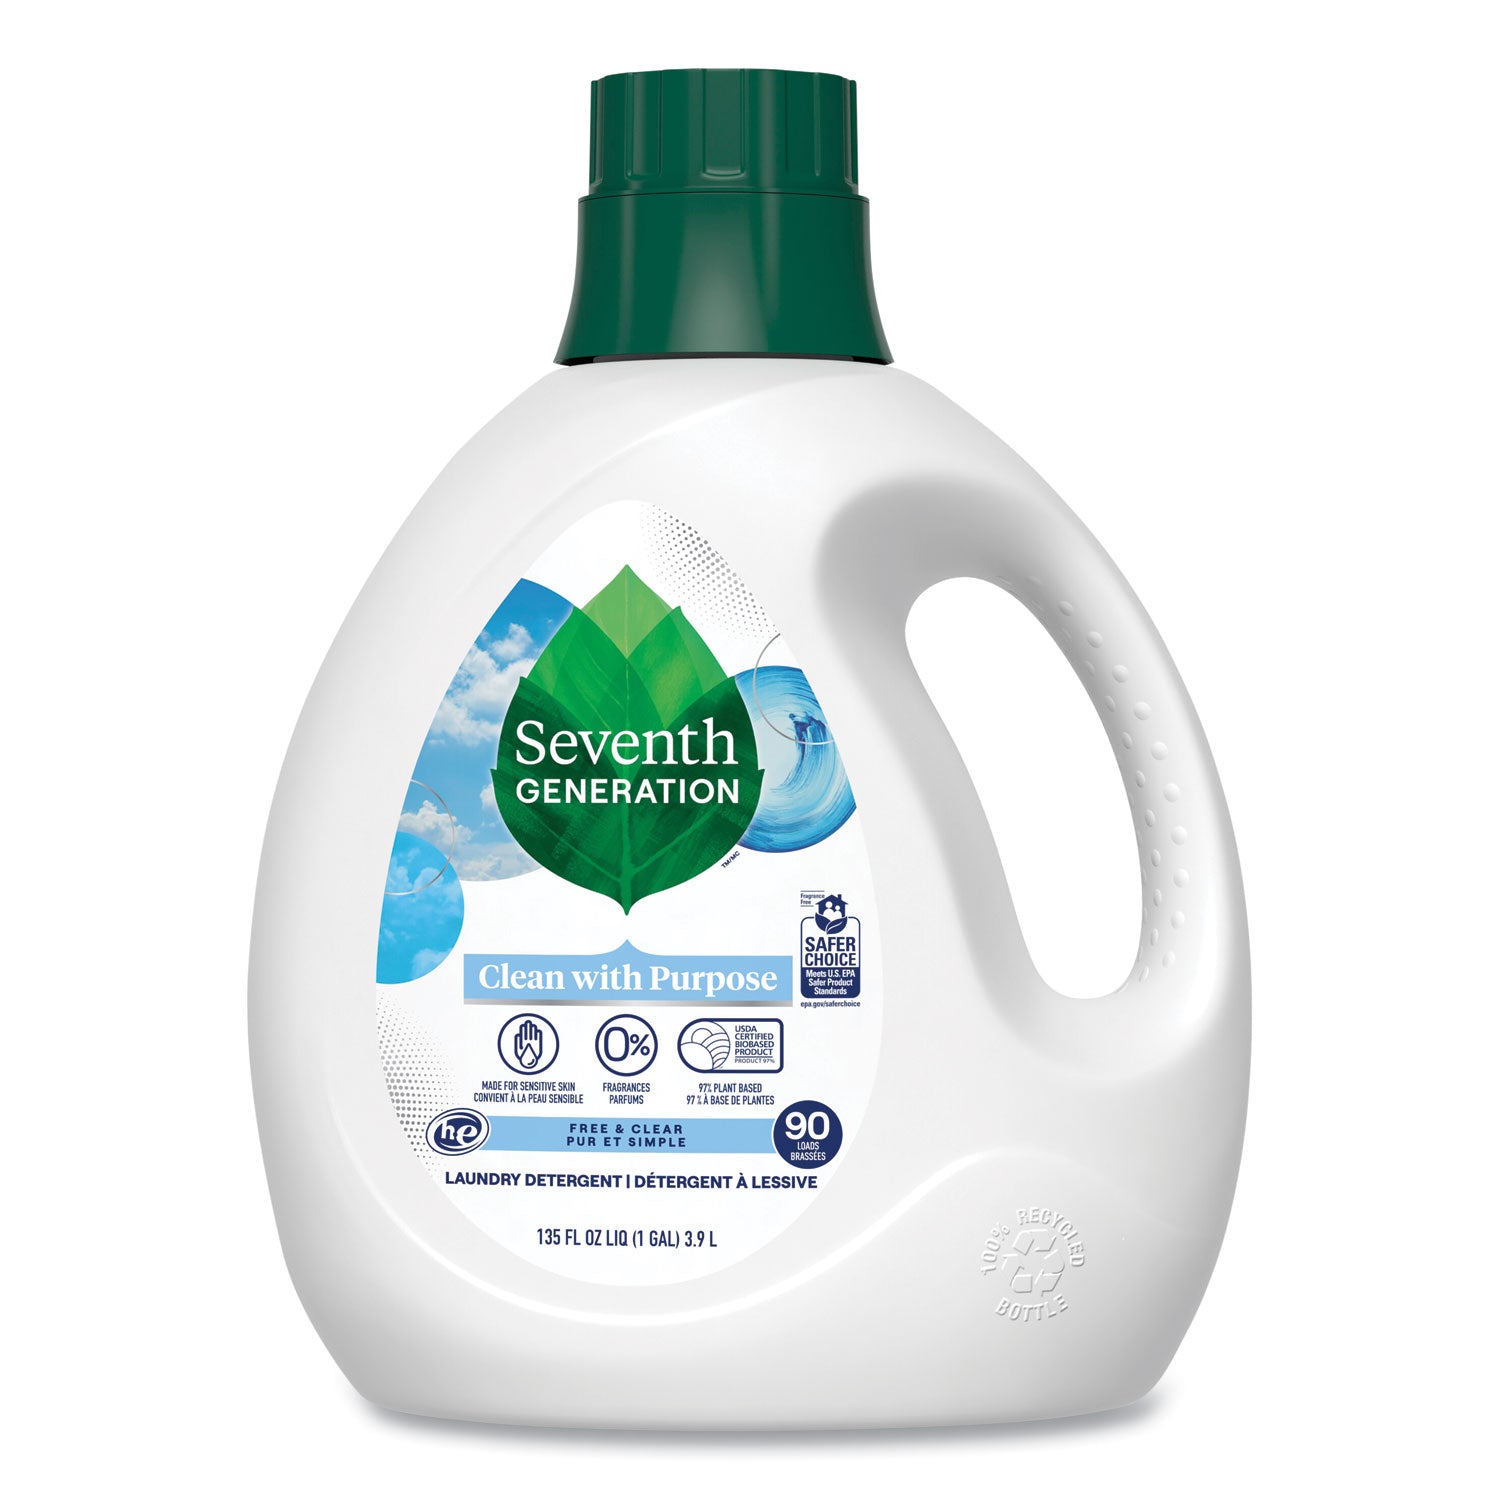 natural-liquid-laundry-detergent-fragrance-free-135-oz-bottle_sev45065ea - 1